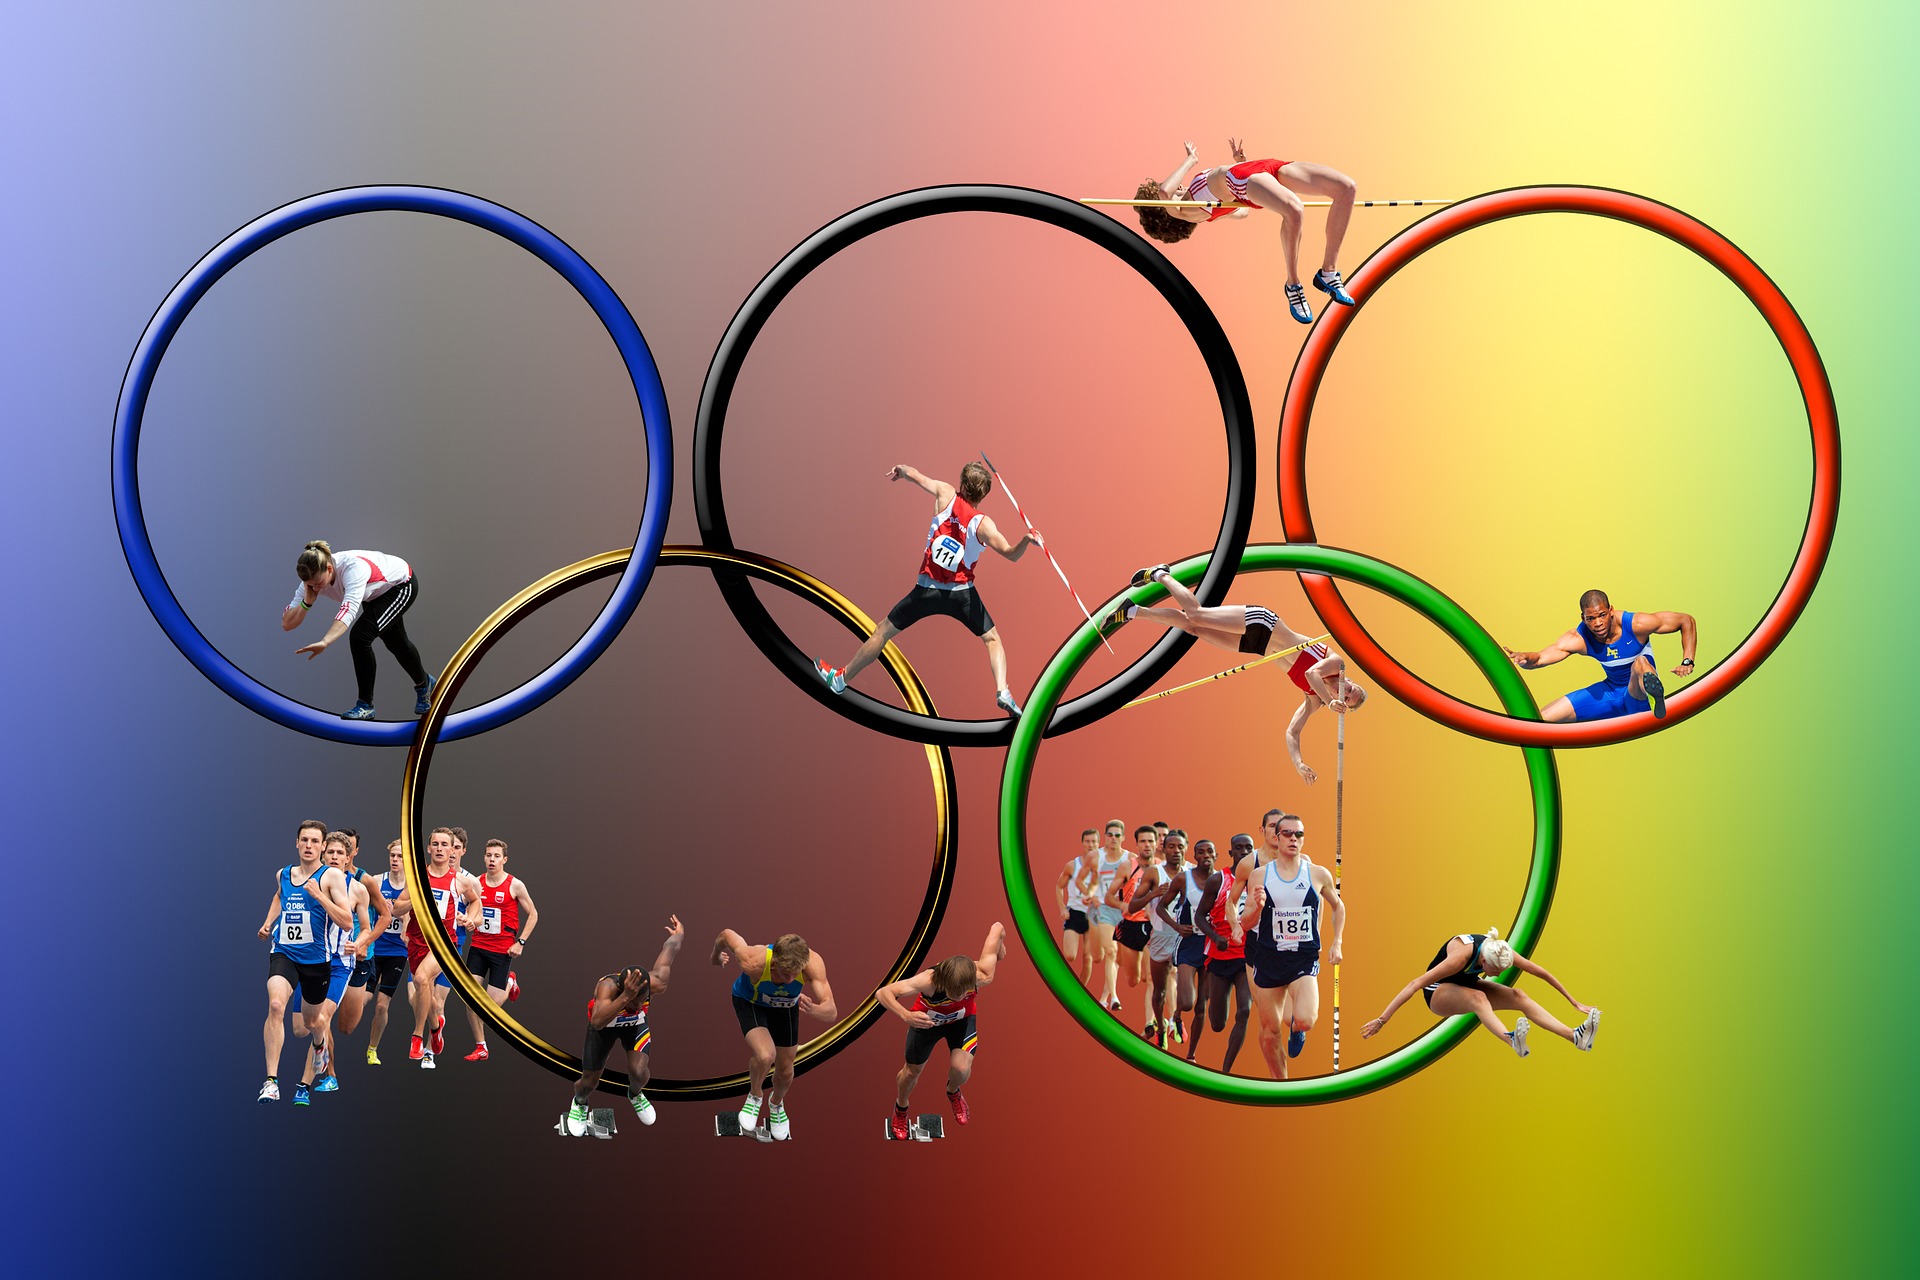 Die fünf Olympia-Ringe sind zu sehen. In den Ringen sind verschiedene Sportler und Sportlerinnen, die unterschiedliche olypische Sportarten ausführen.